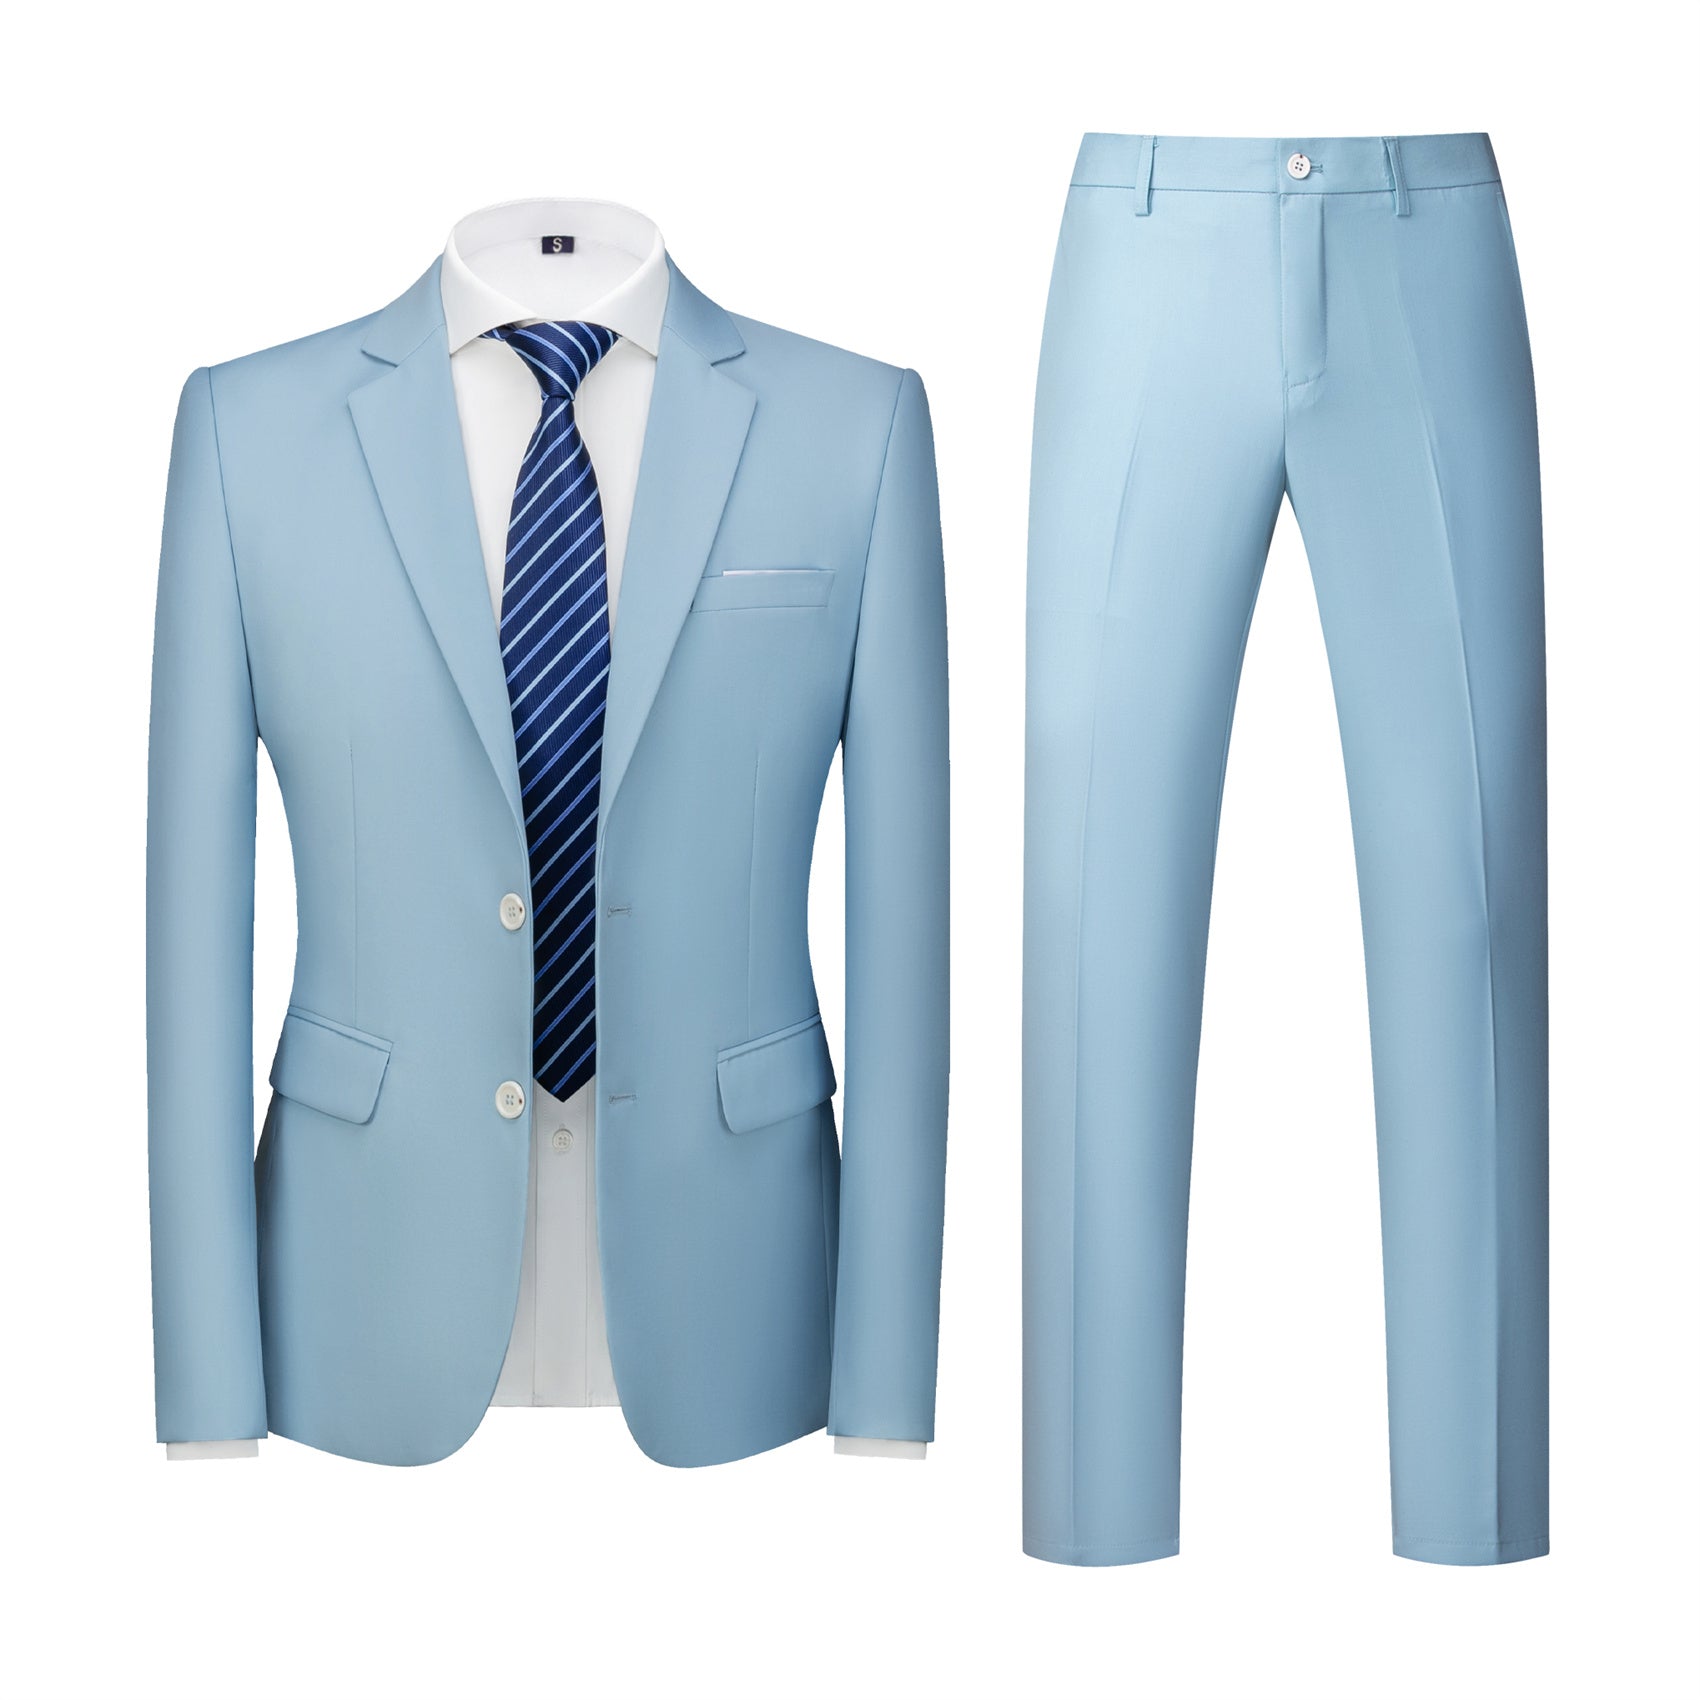 2-piece-light-blue-suit.jpg